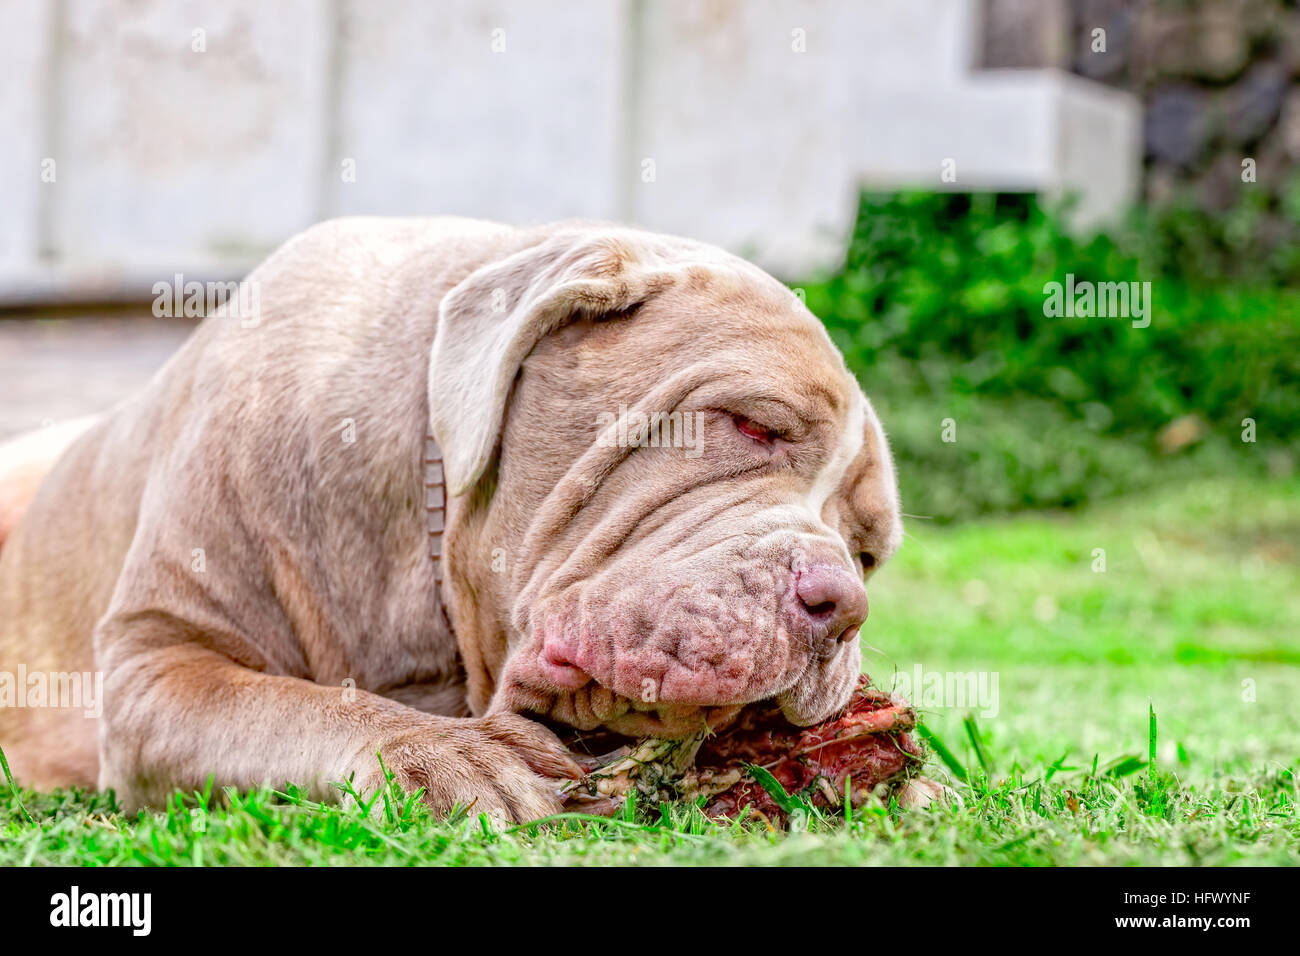 Mâtin napolitain jeune chien allongé sur une pelouse verte heureusement un grand os à mâcher brute tient entre ses pattes avant Banque D'Images